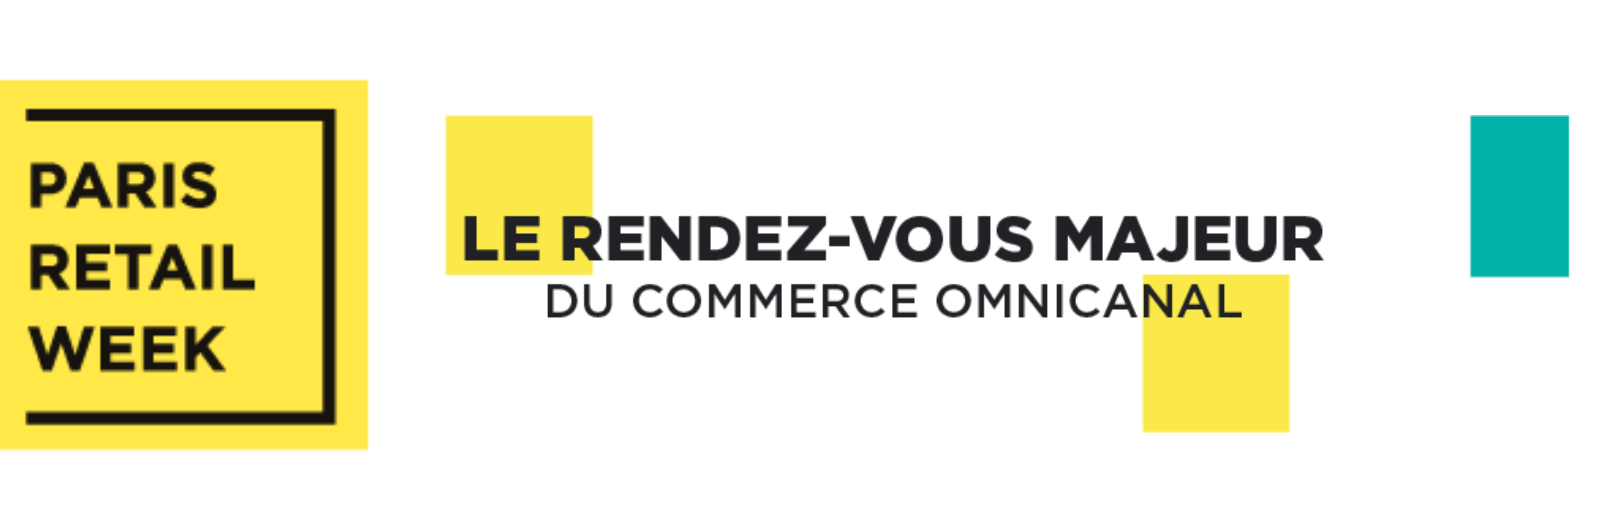 Prix et fidélisation au cœur des thématiques de « Paris Retail Week »